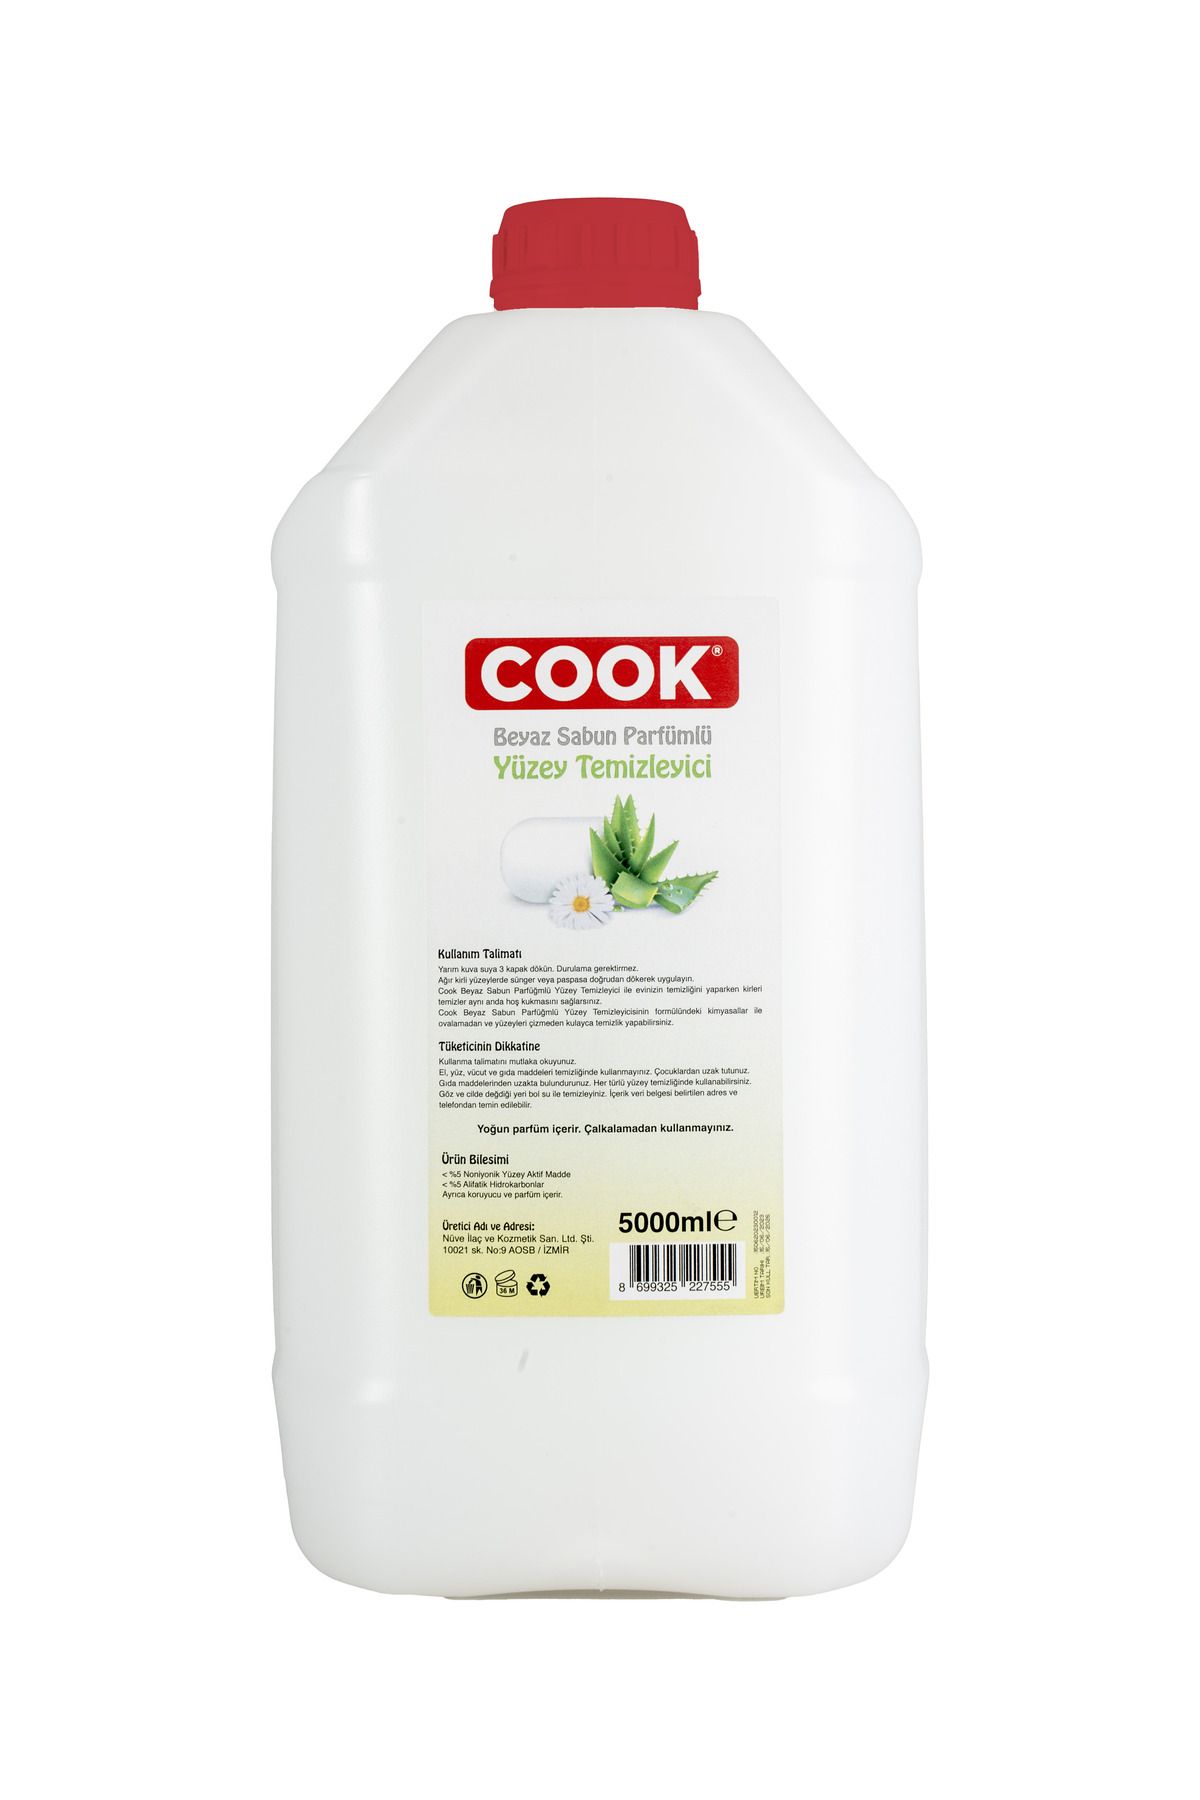 COOK Beyaz Sabun Parfümlü Yüzey Temizleyici 5 Lt